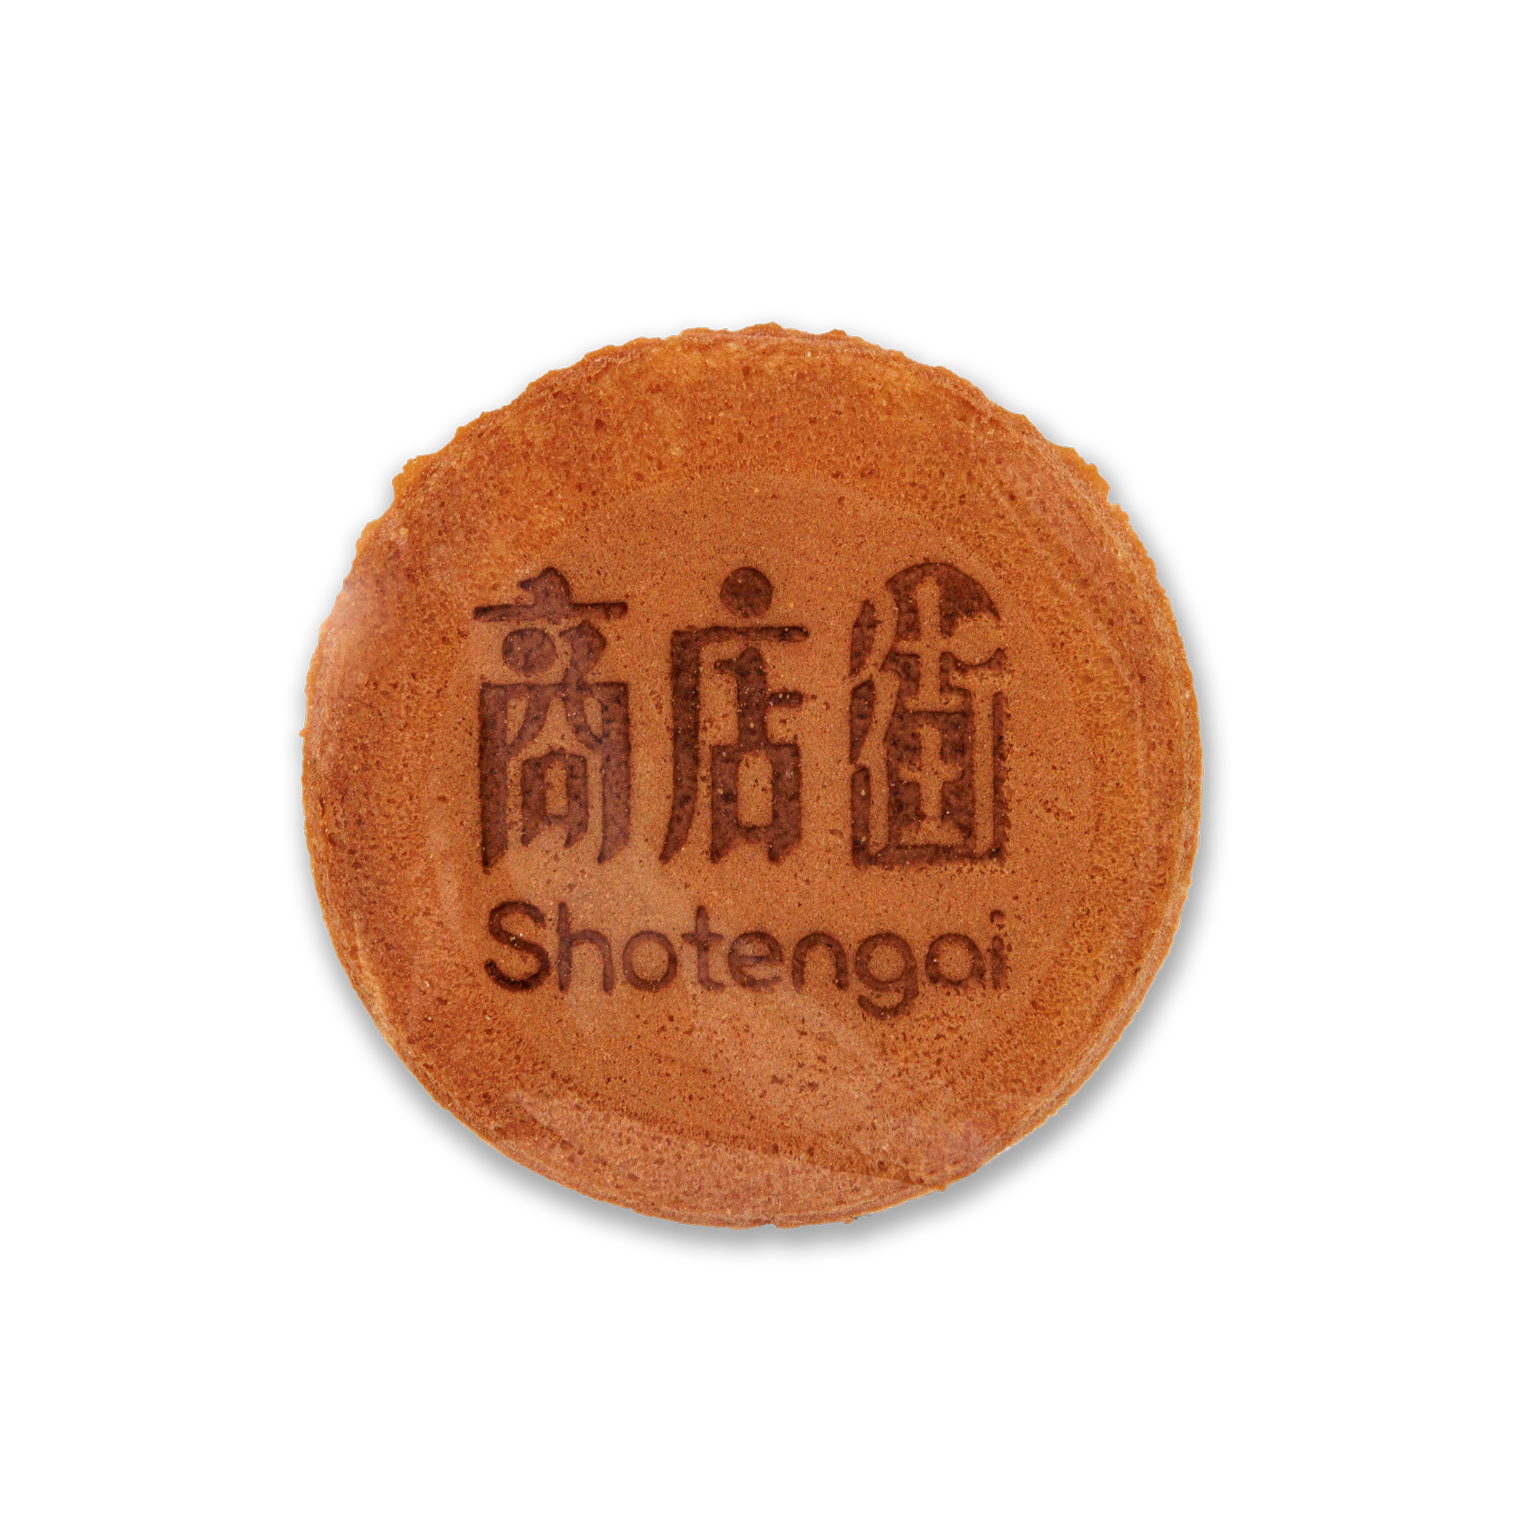 Shotengai Original Senbei